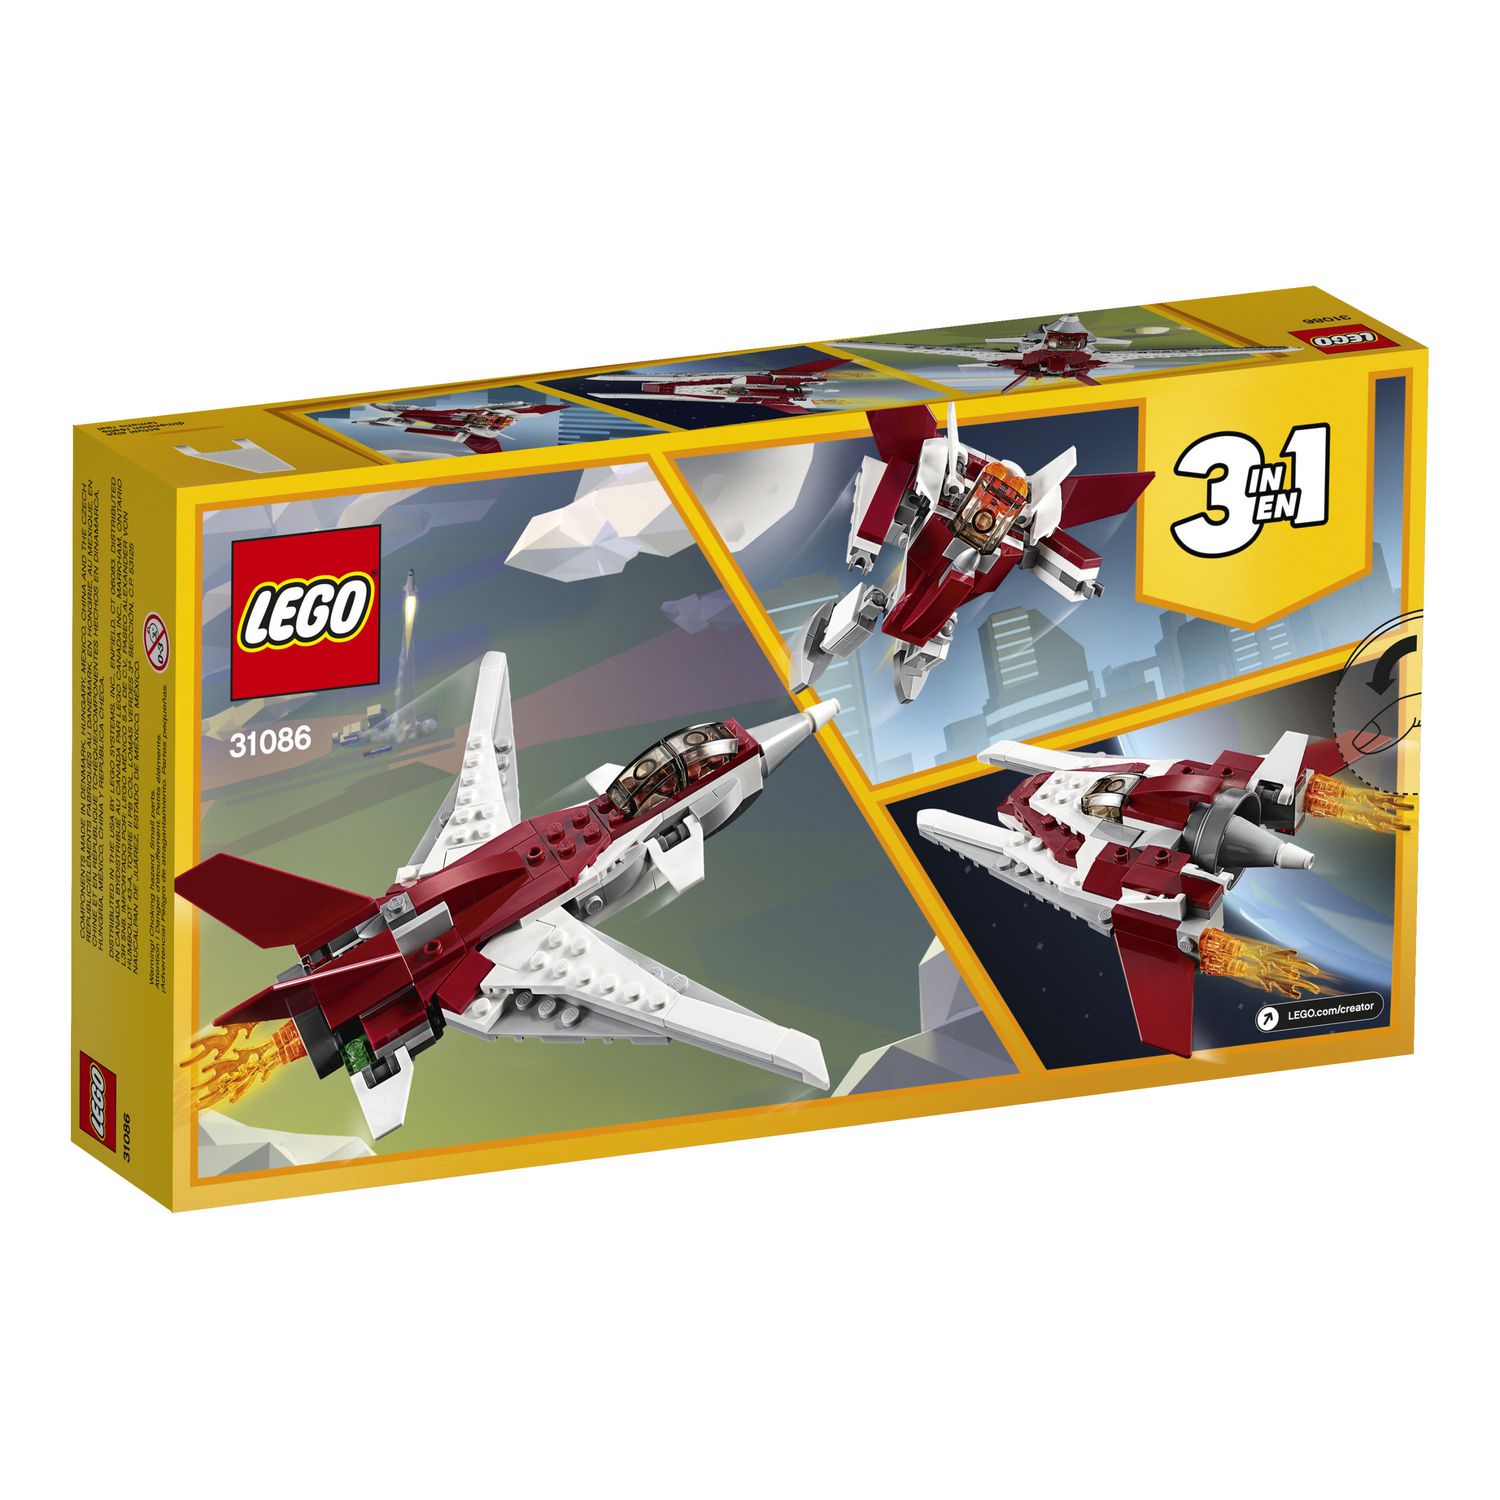 LEGO Creator 3in1 Futuristic Flyer 31086 Building Kit (157 Piece)